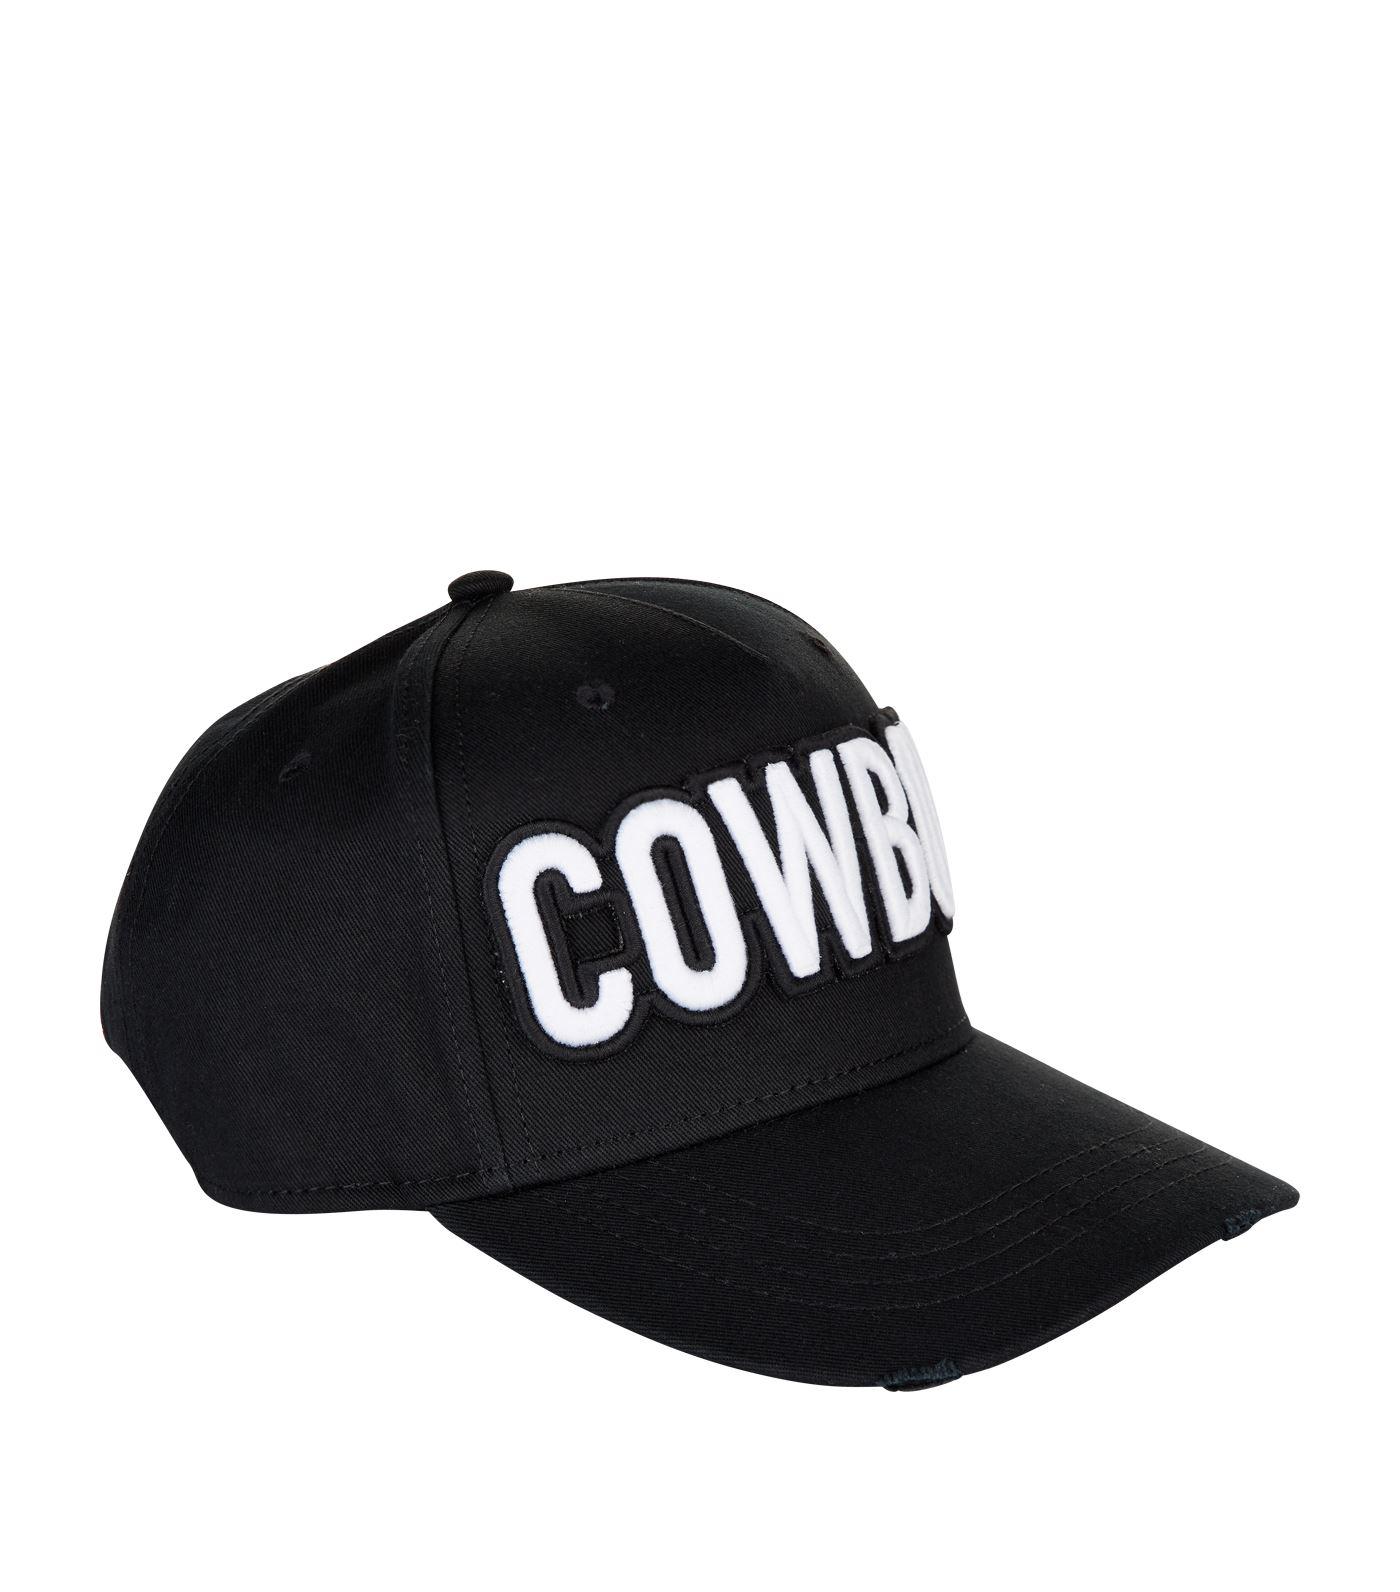 DSquared² Cotton Cowboy Cap in Black 